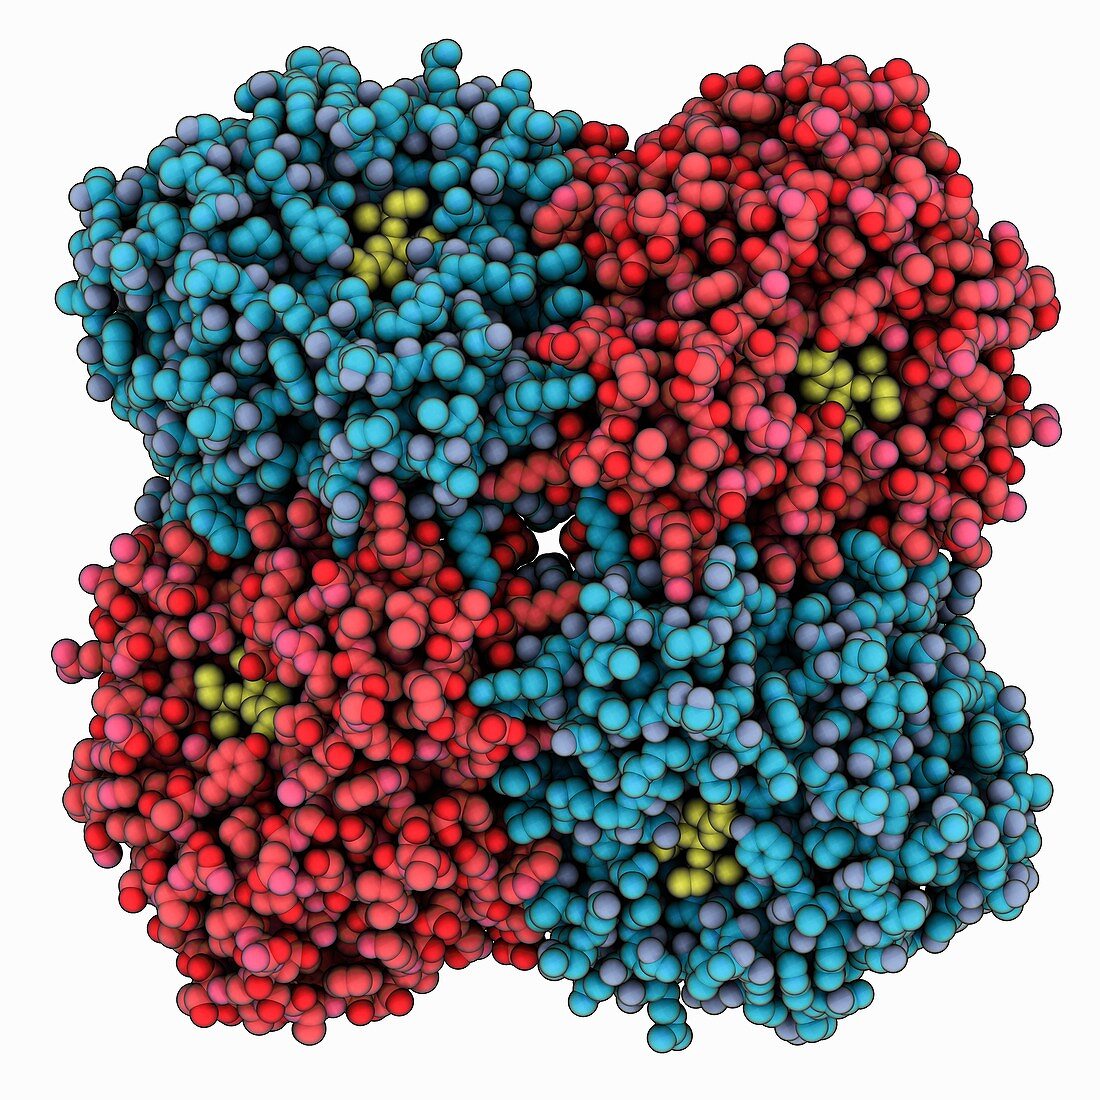 H5N1 neuraminidase complex